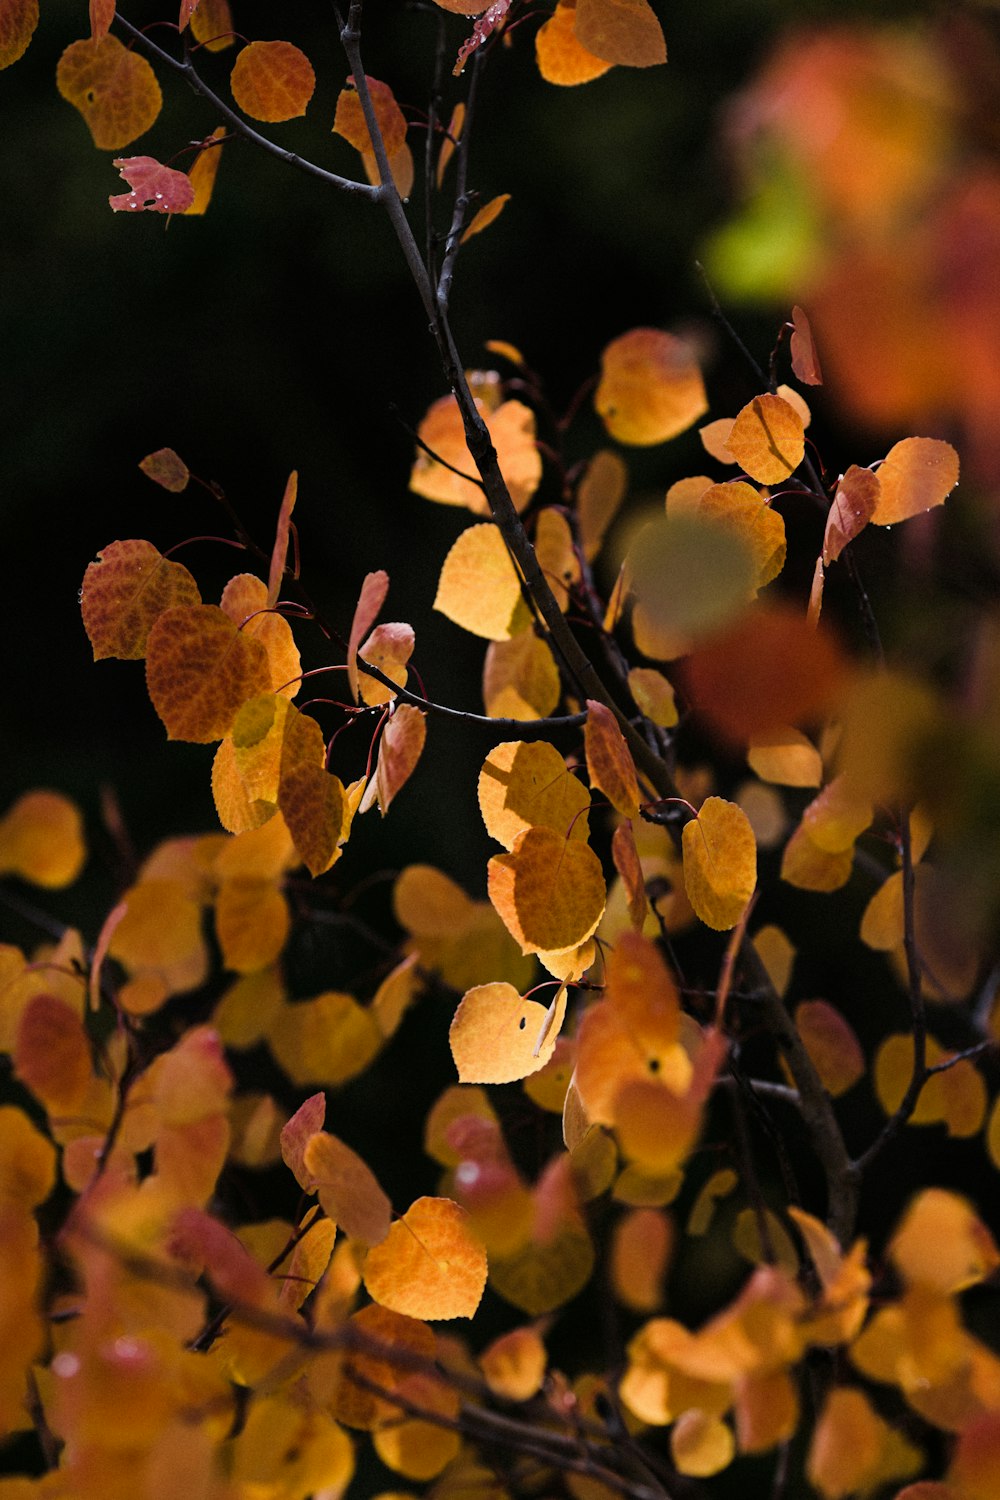 オレンジ葉のセレクティブフォーカス撮影